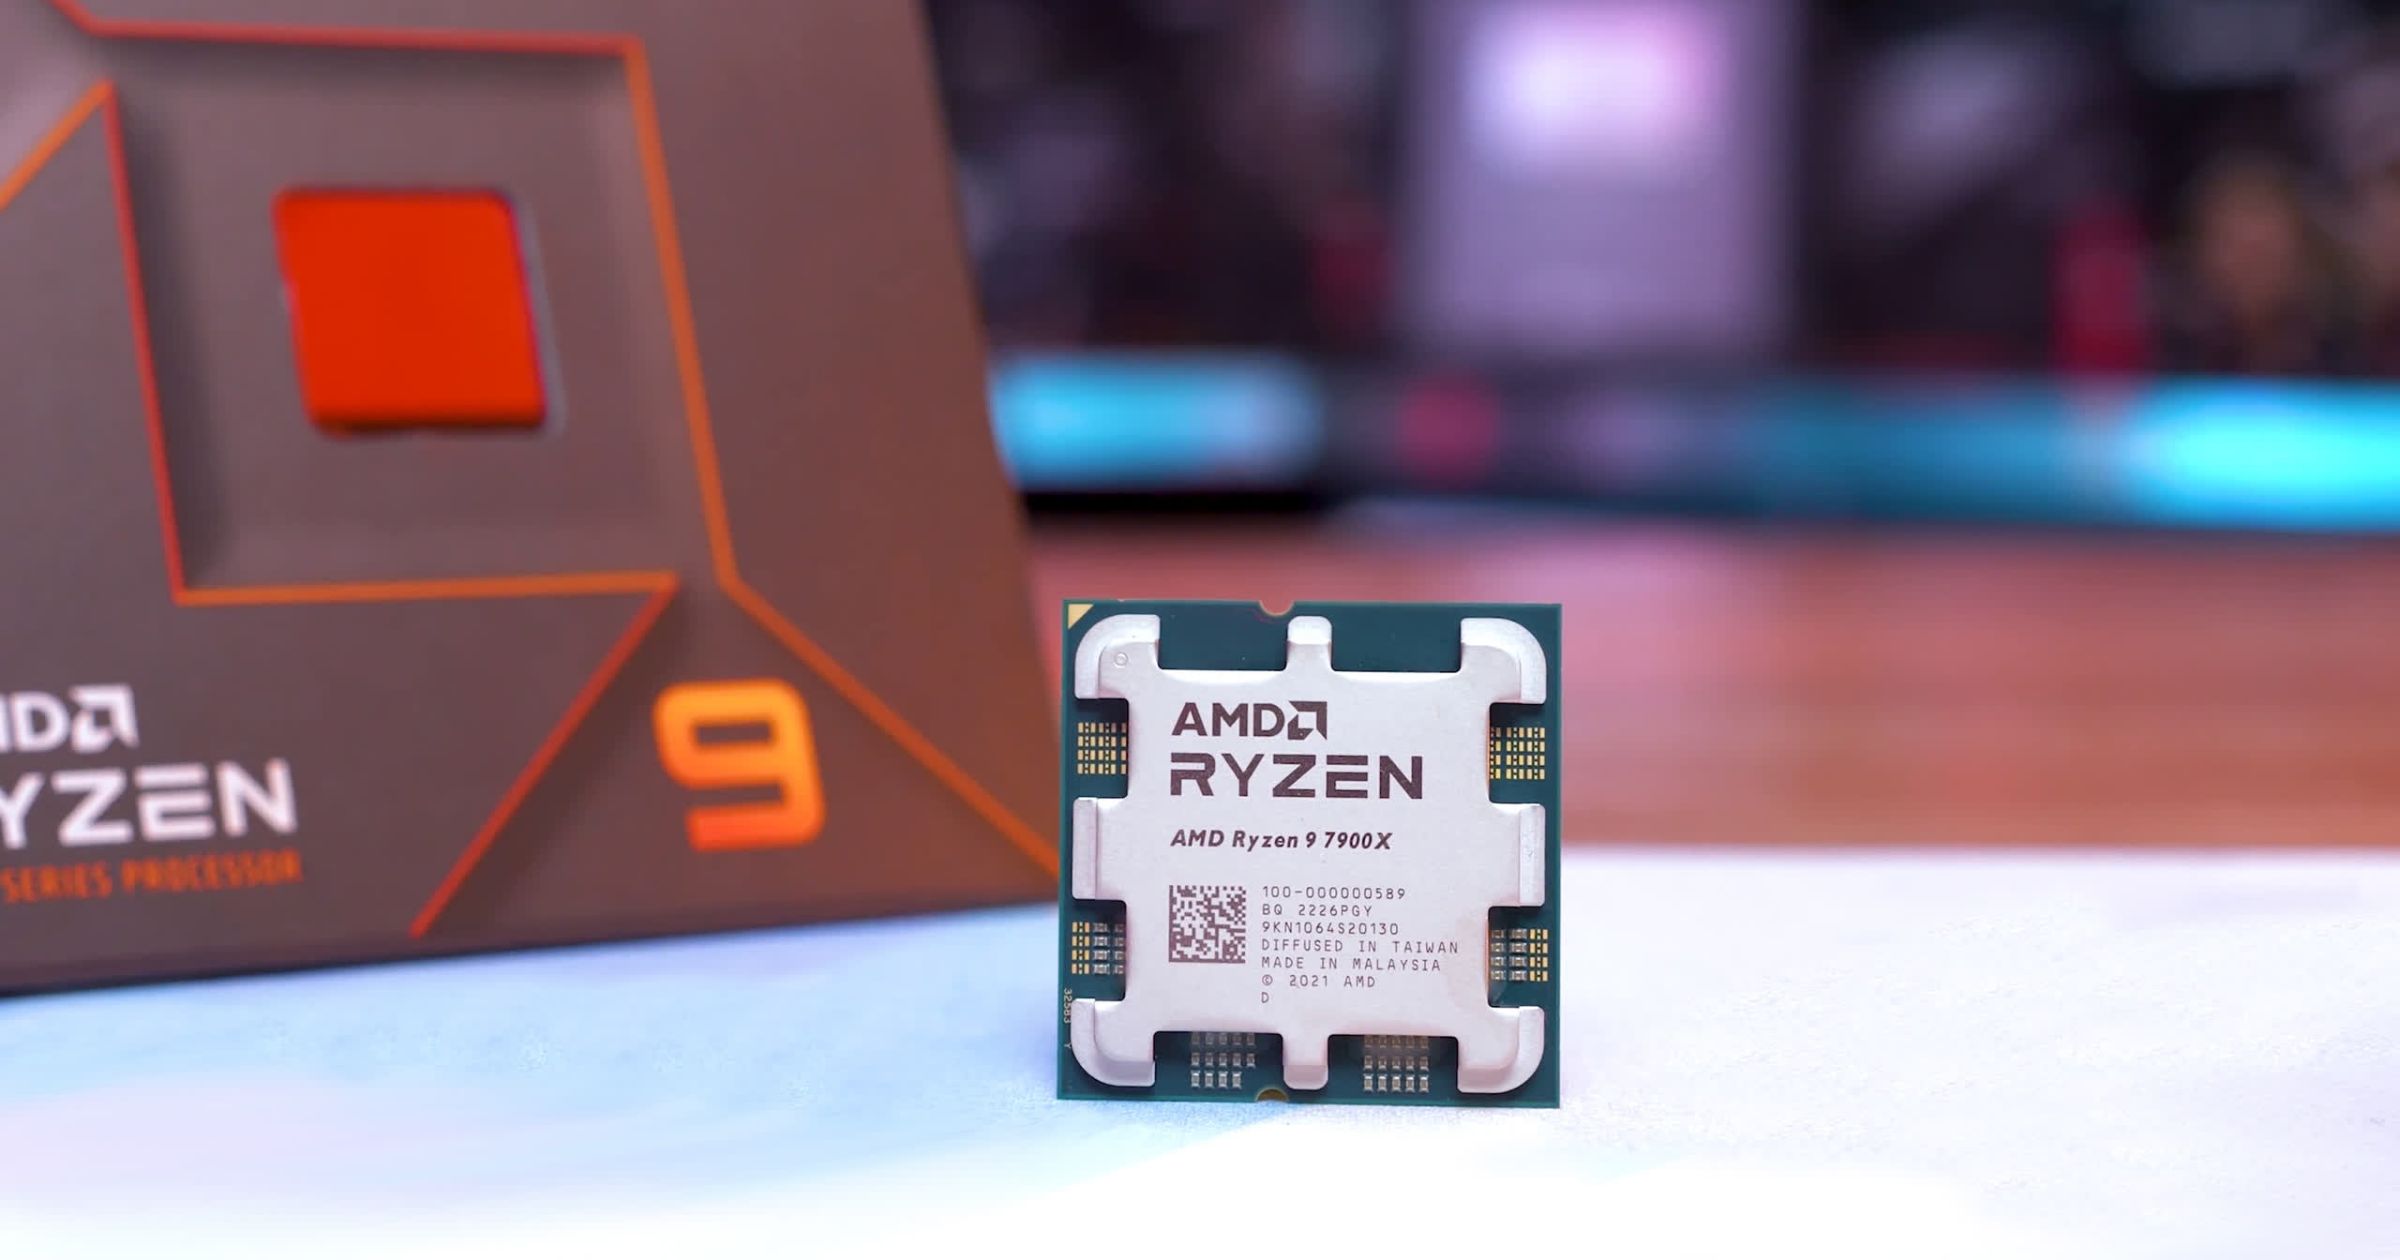 AMD Ryzen 9 7900K Processor